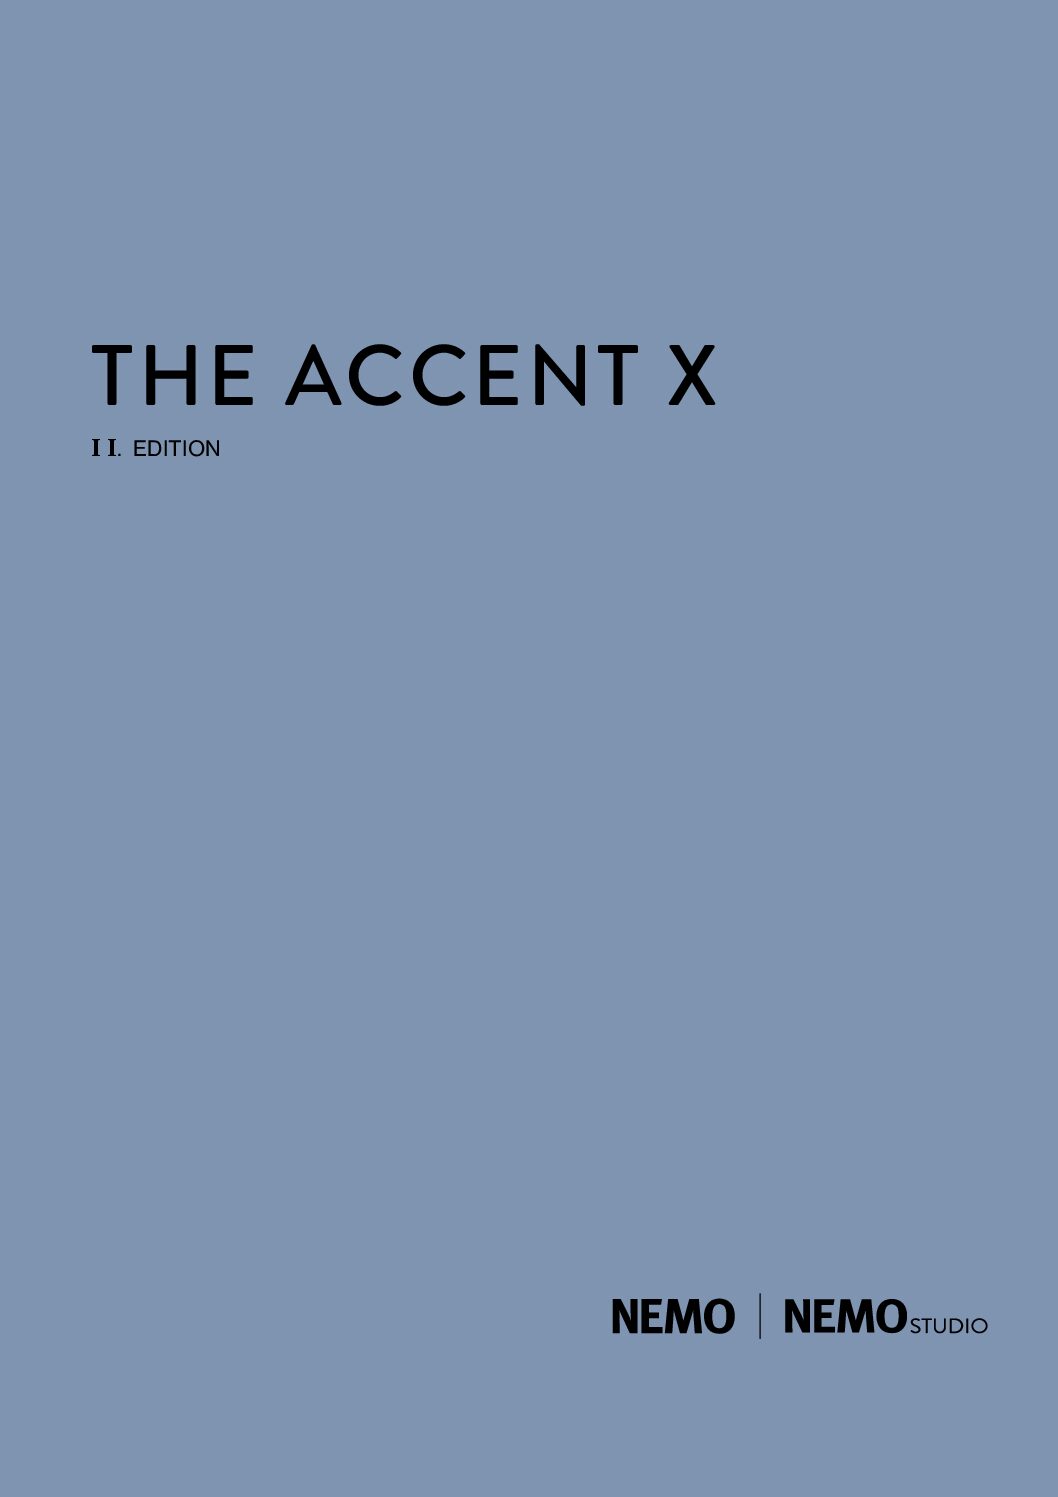 Nemo-The-Accent-1021-pdf